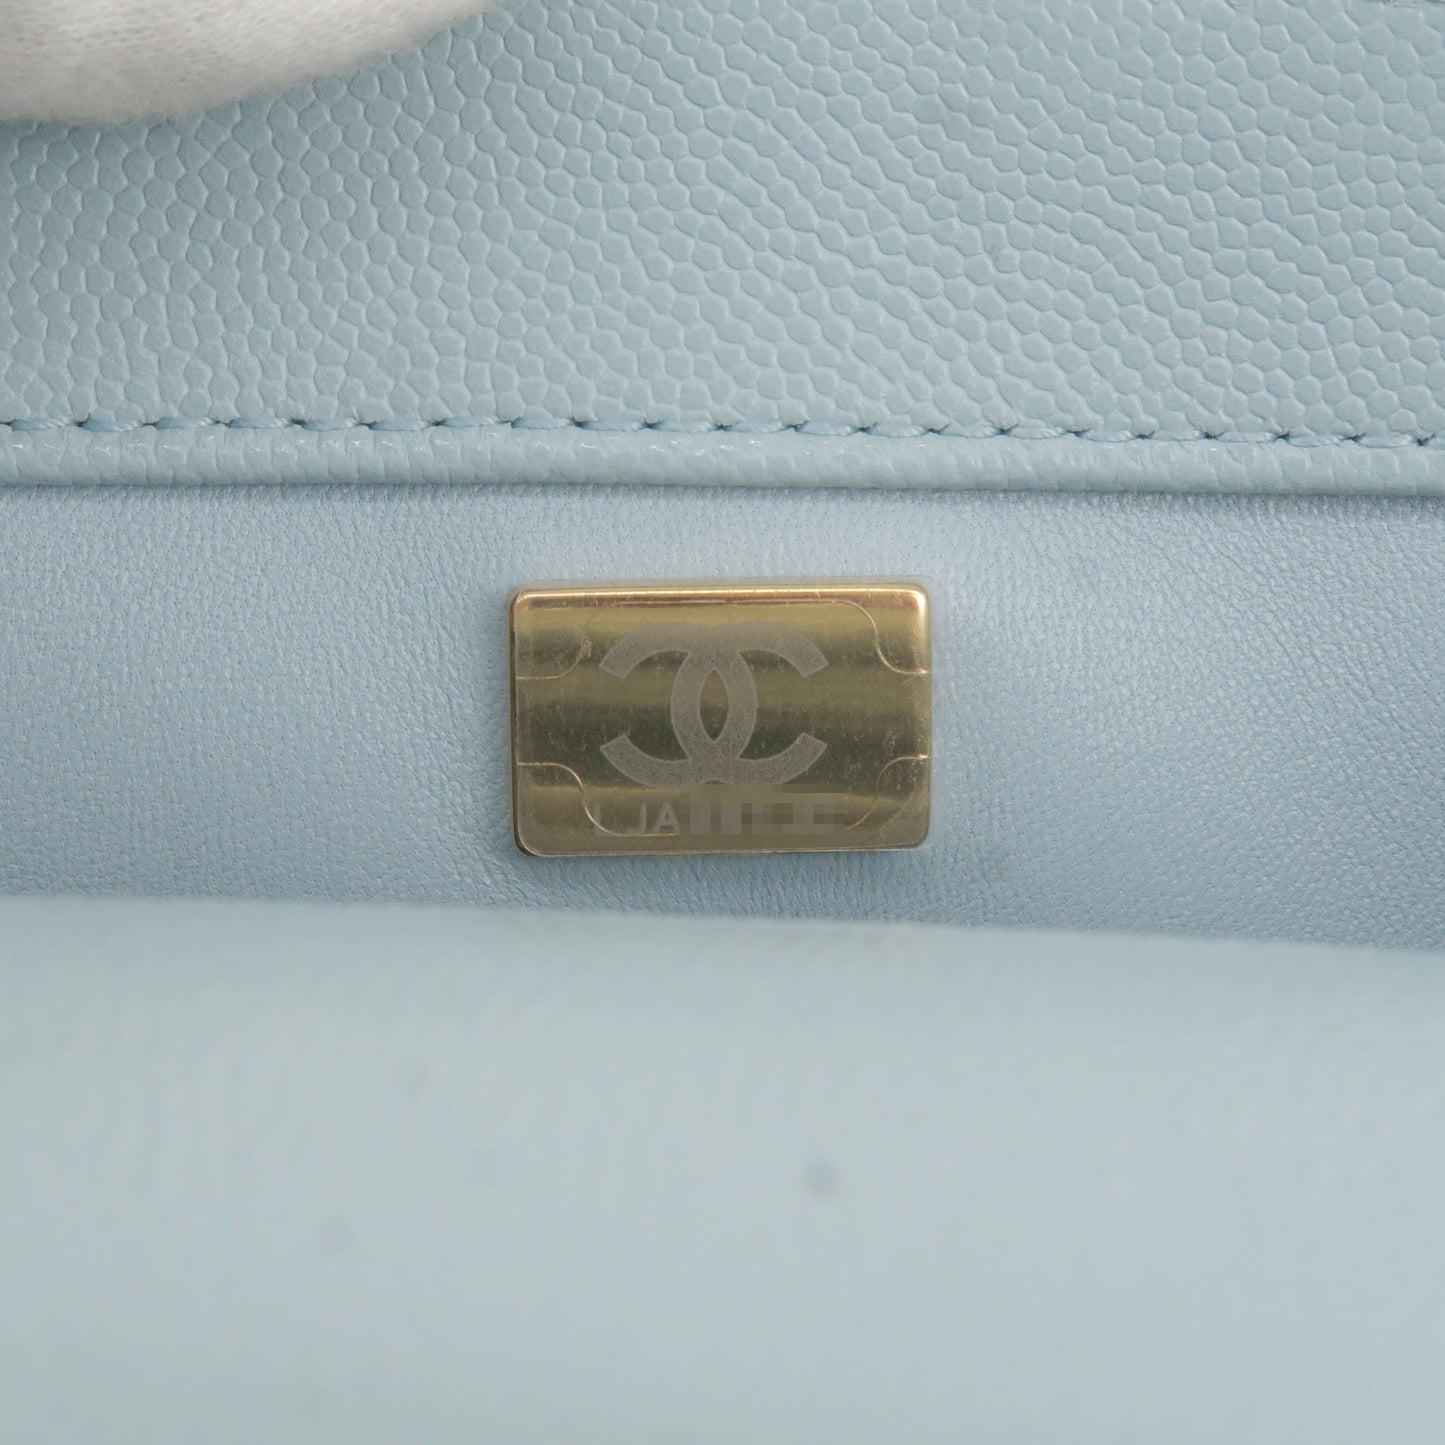 CHANEL Coco handle XS A92990 Handbag Japan ookura